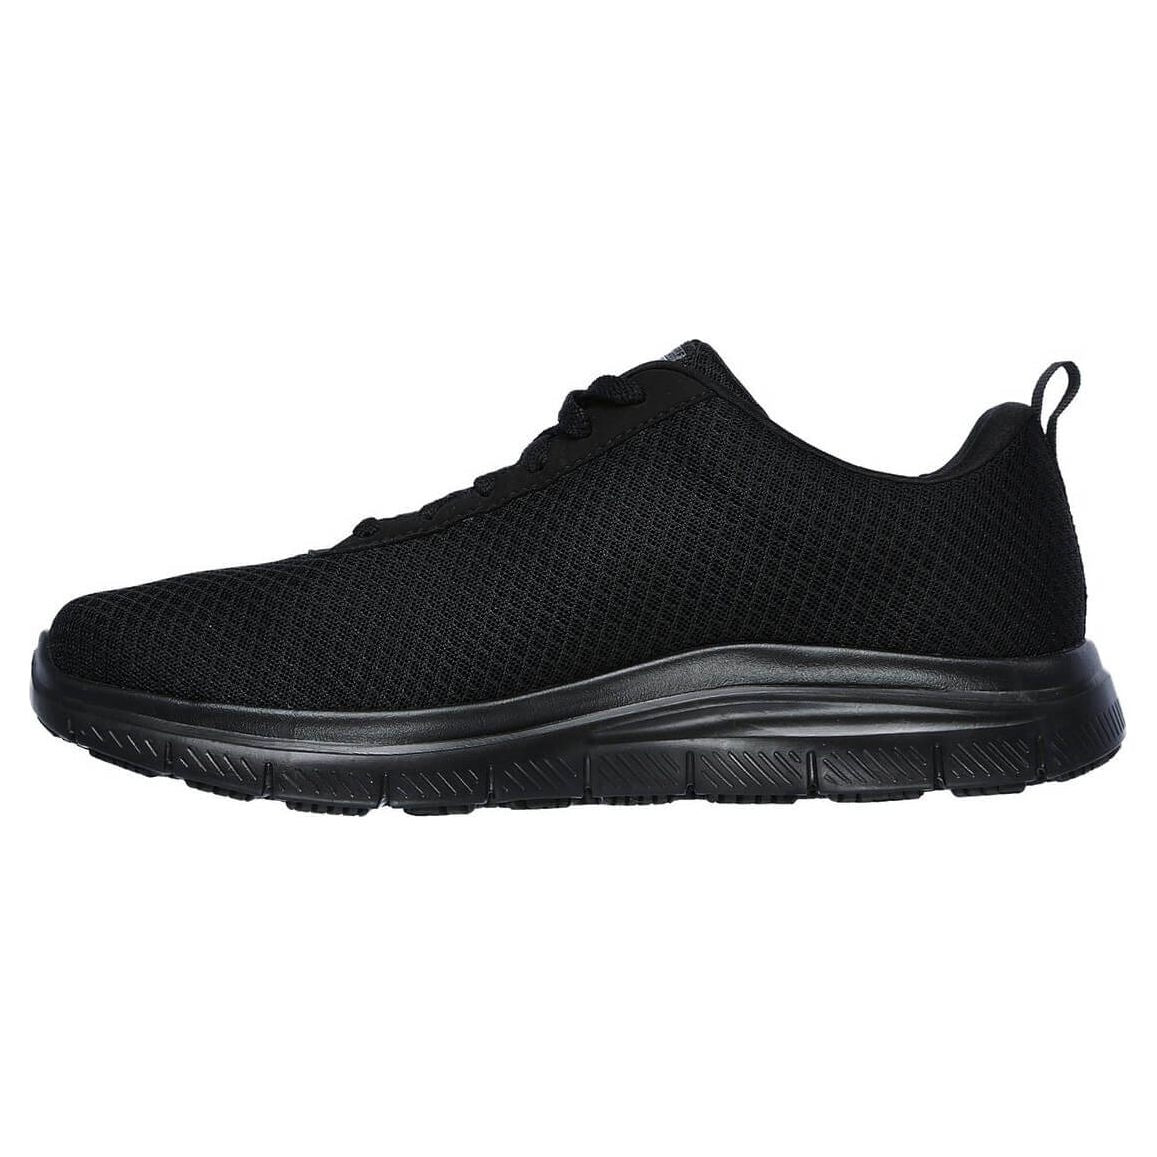 Skechers Bendon Flex Advantage Slip resistant Work Shoes-Black-5